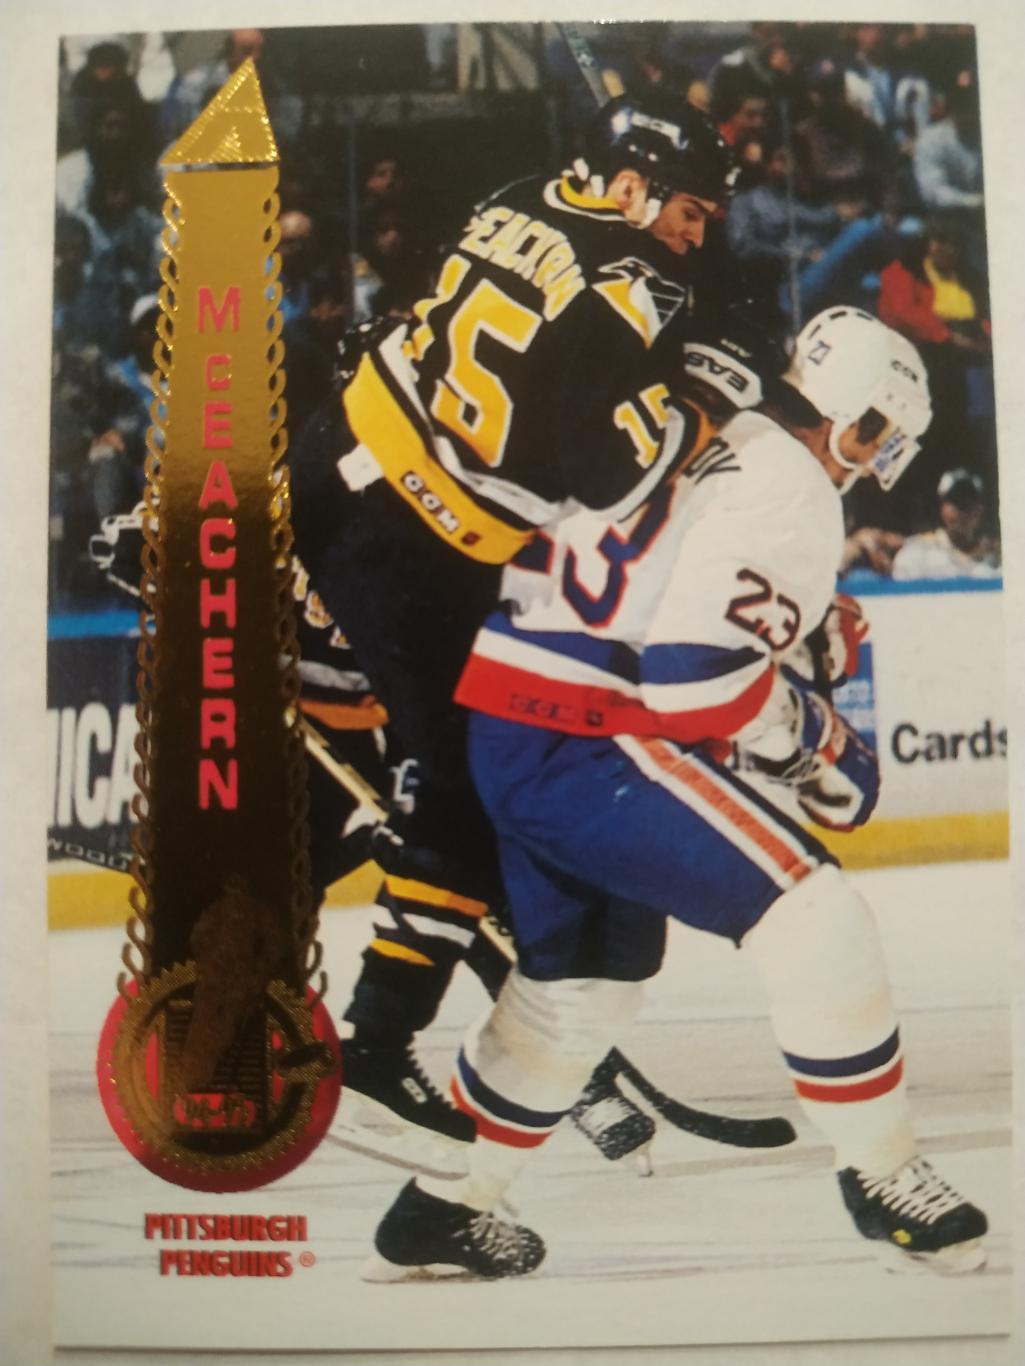 ХОККЕЙ КАРТОЧКА НХЛ PINNACLE 1994-95 NHL SHAWN MCEACHERN PITTSBURGH #127